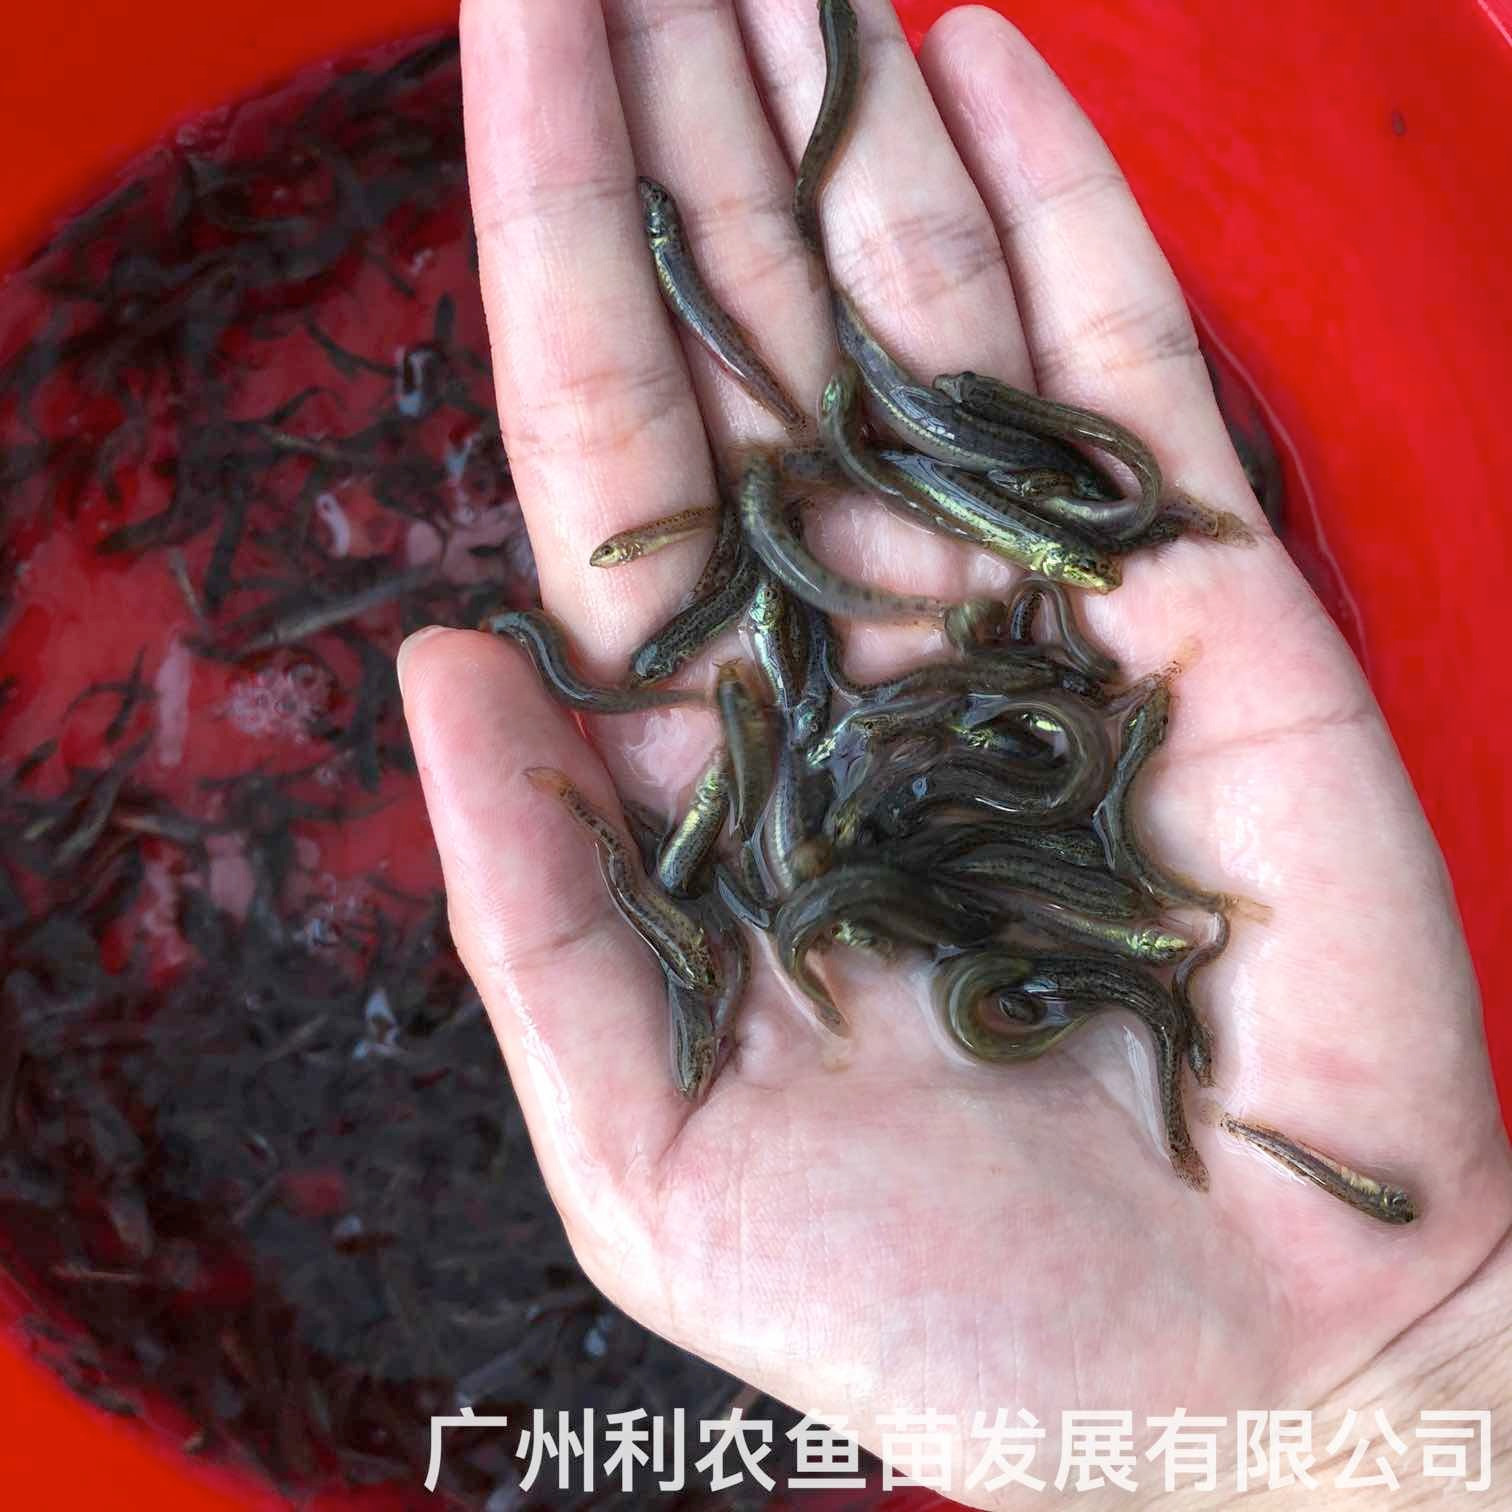 翁源台湾泥鳅苗出售四会泥鳅鱼苗批发